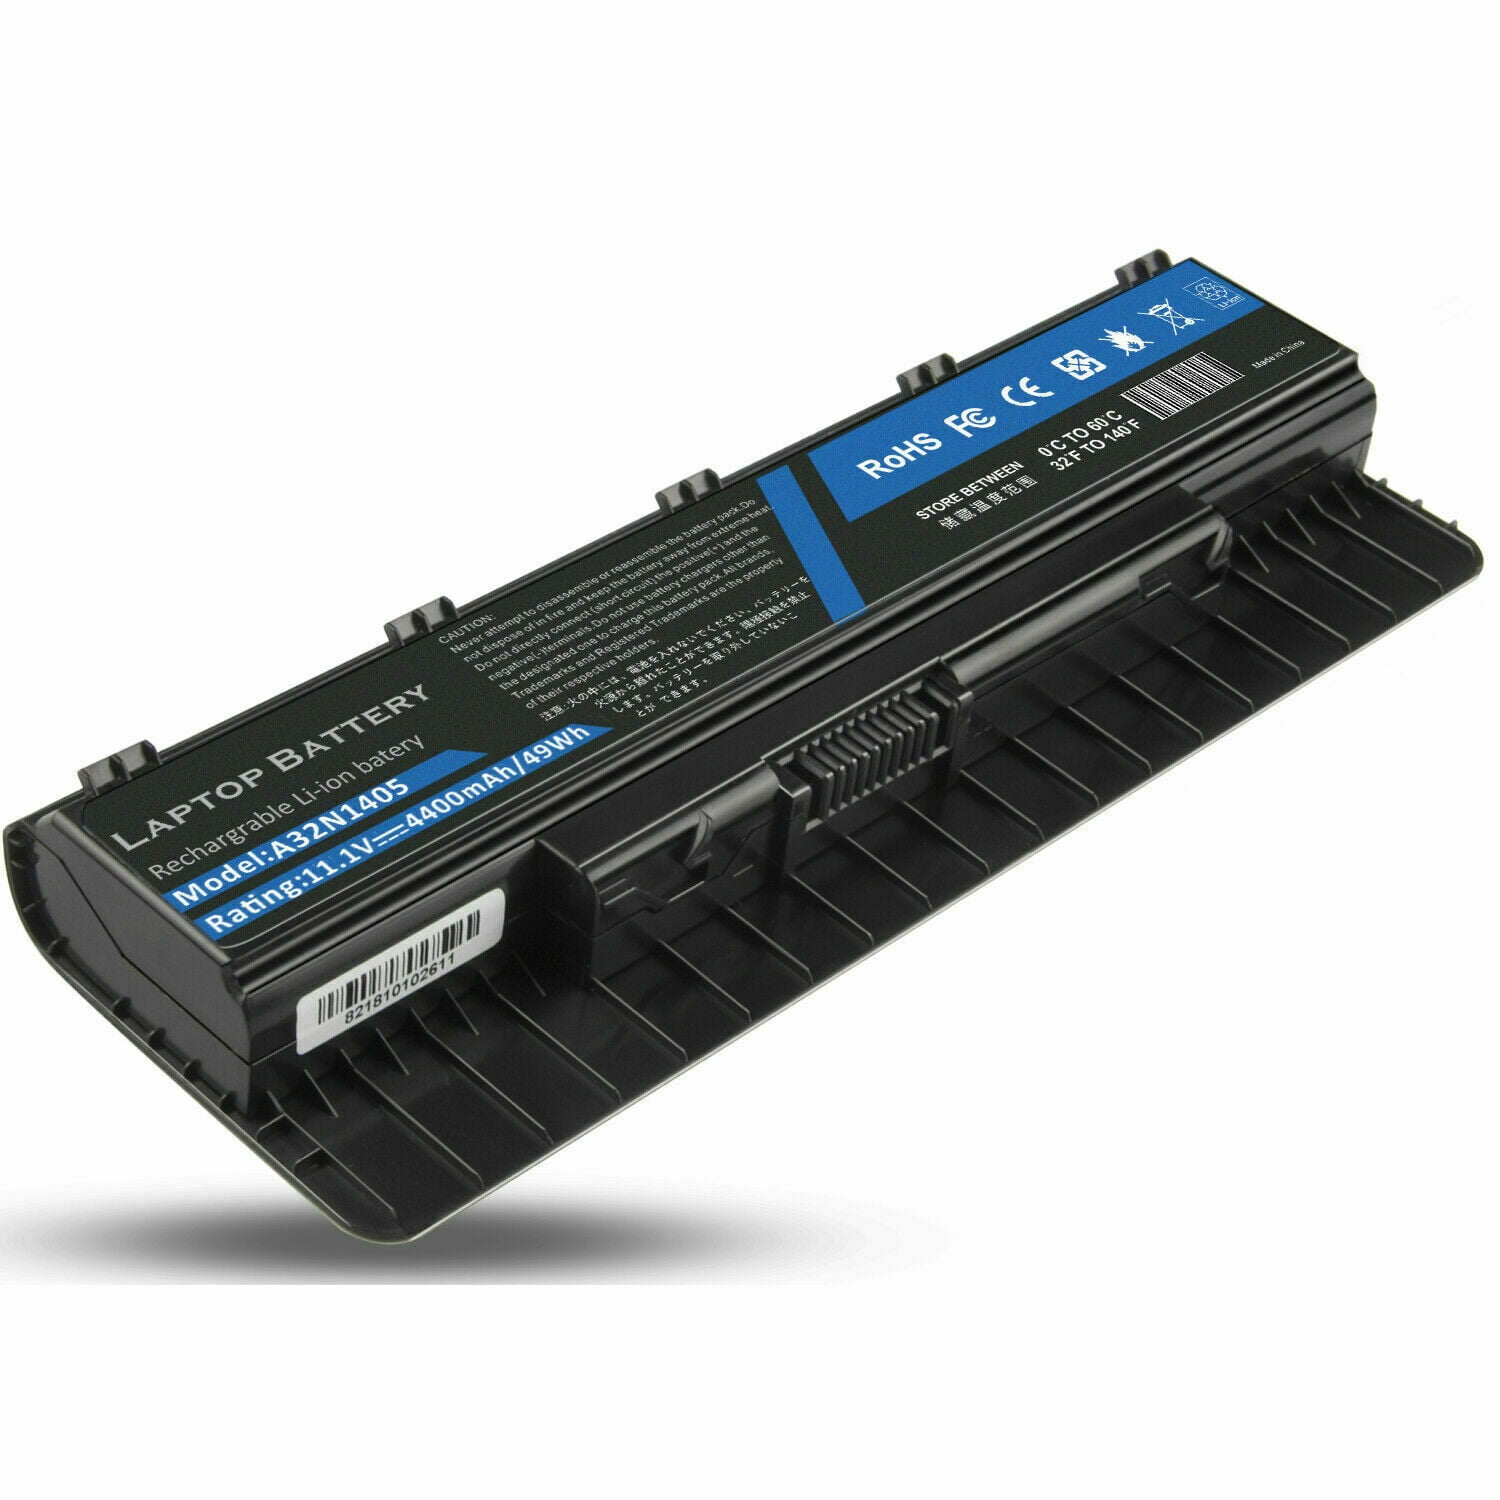 Asus battery pack a32. A32n1405 Battery ASUS. Аккумулятор для ASUS g752vs. ASUS a32n1405 g551 g551j g551jk g551jm ROG g771 g771j g771jk 10.8v 4400mah li-ion. 32.